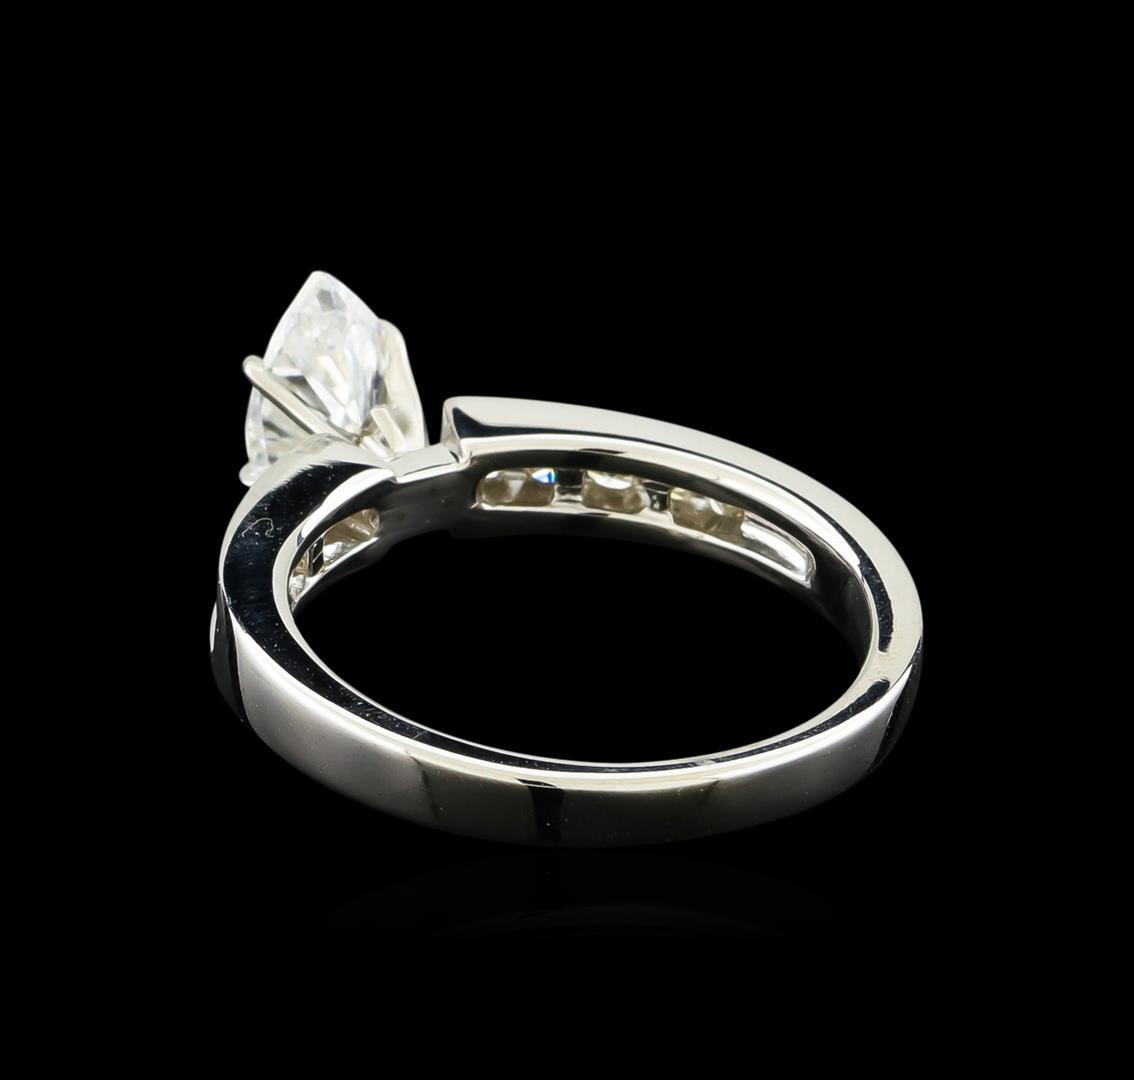 1.39 ctw Diamond Ring - 14KT White Gold